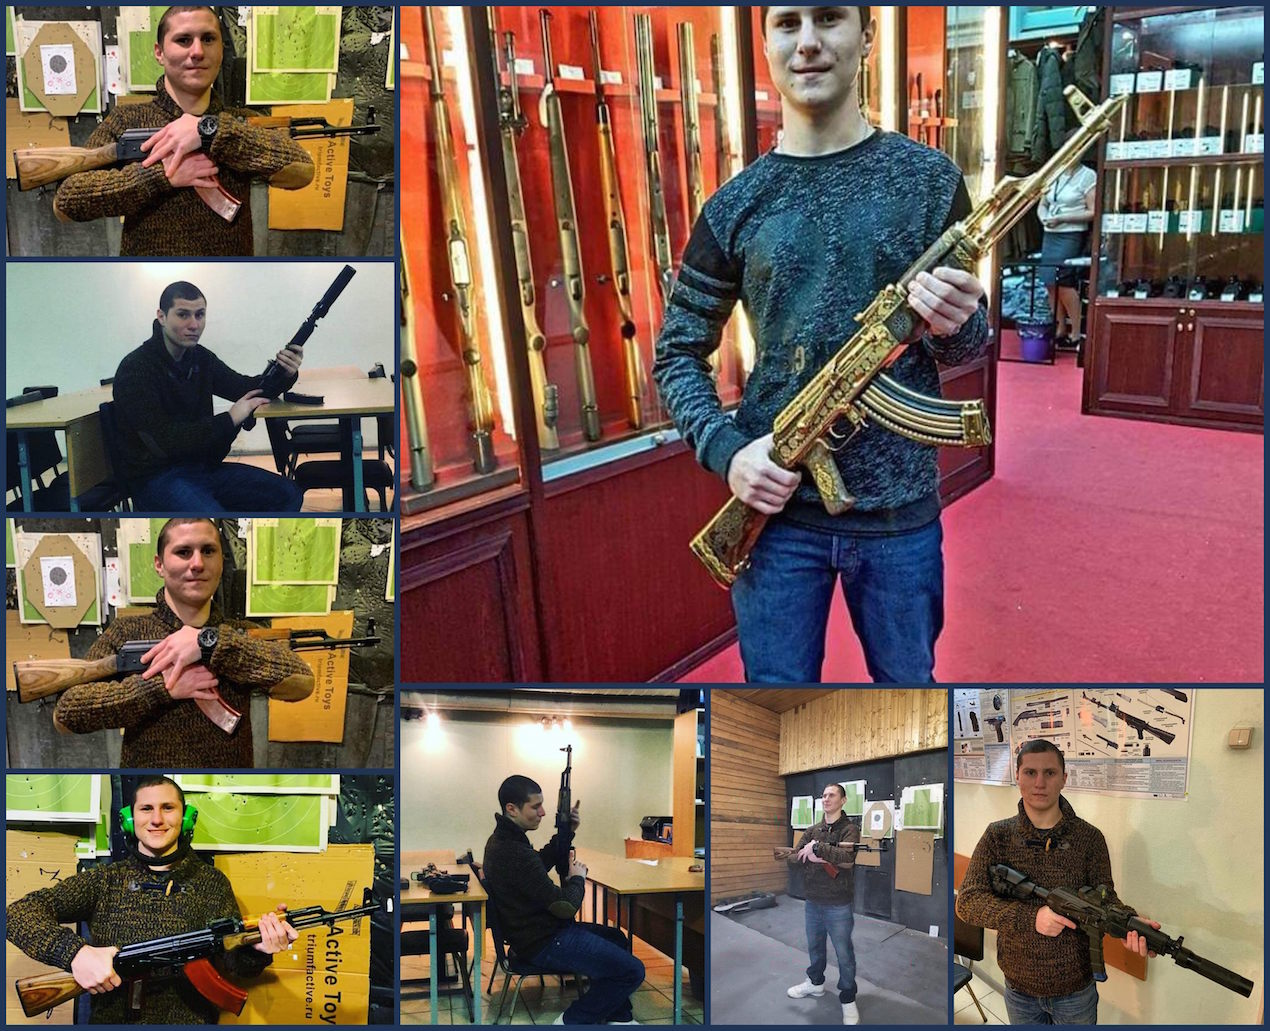 Kamal Ilich Nadjar Vetshev en varias fotos de Facebook en el que muestra afición a las armas.